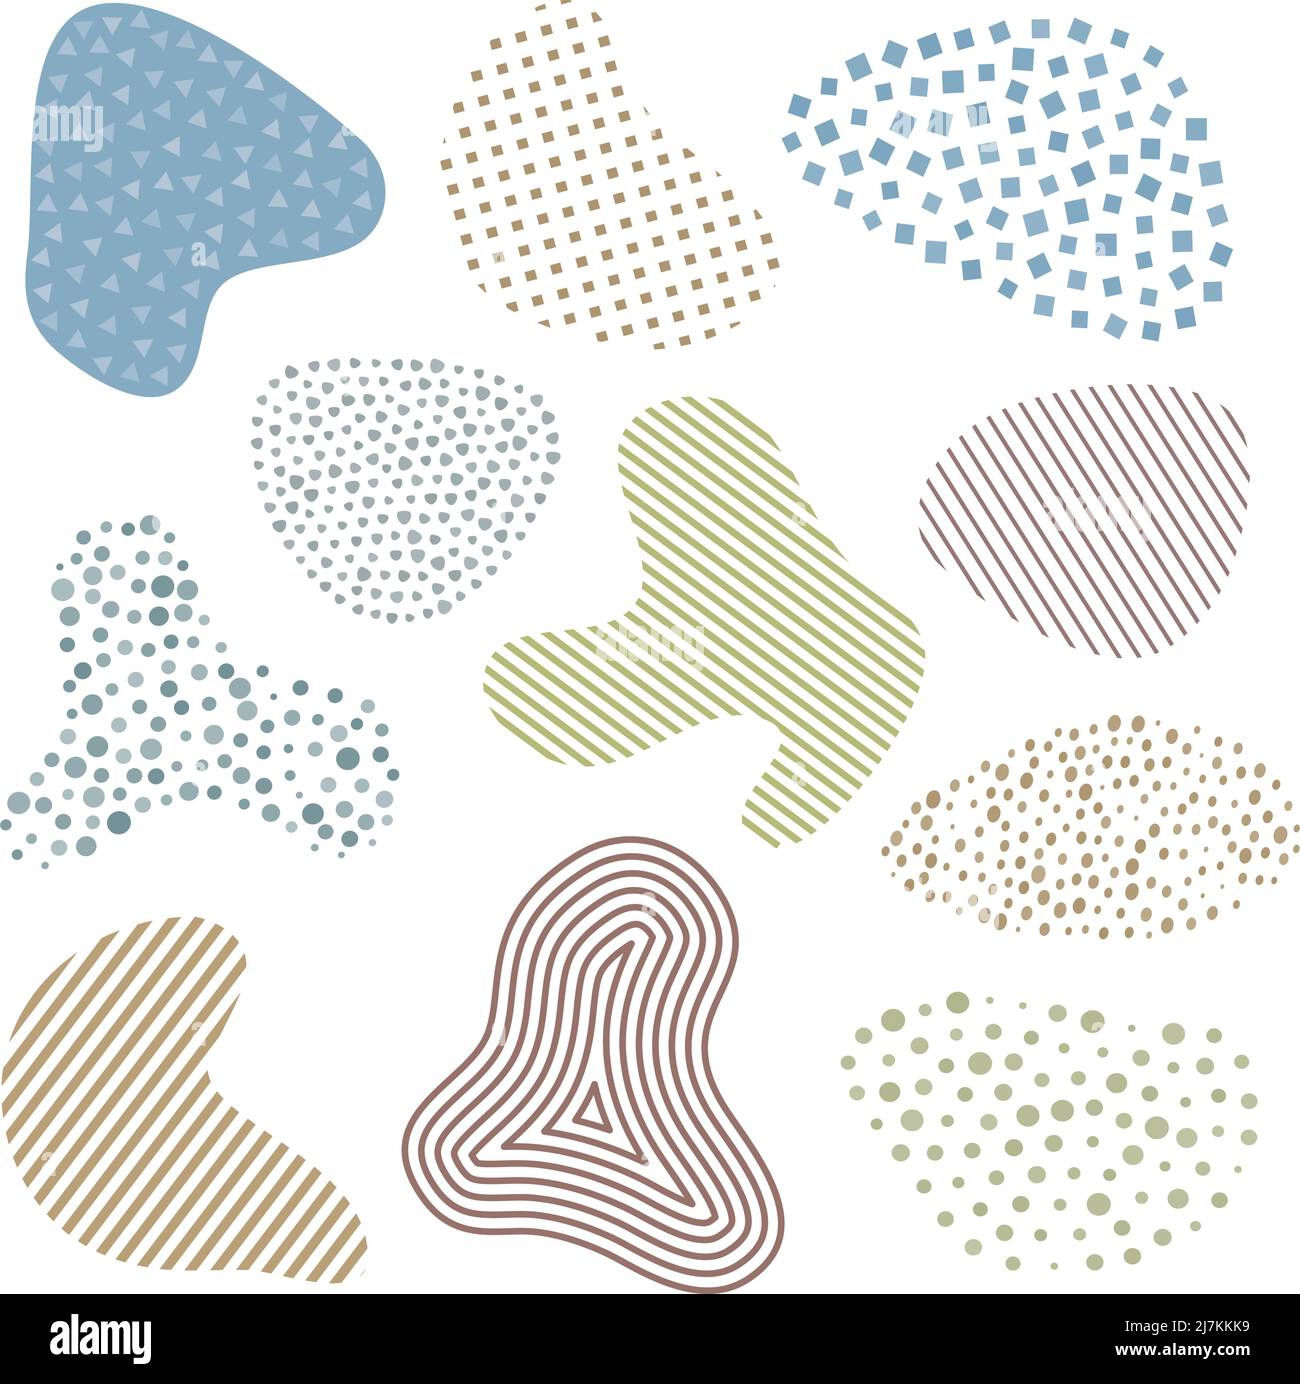 Sammlung von abstrakten bunten Blob geformte grafische Elemente, Vektor-Illustration Stock Vektor